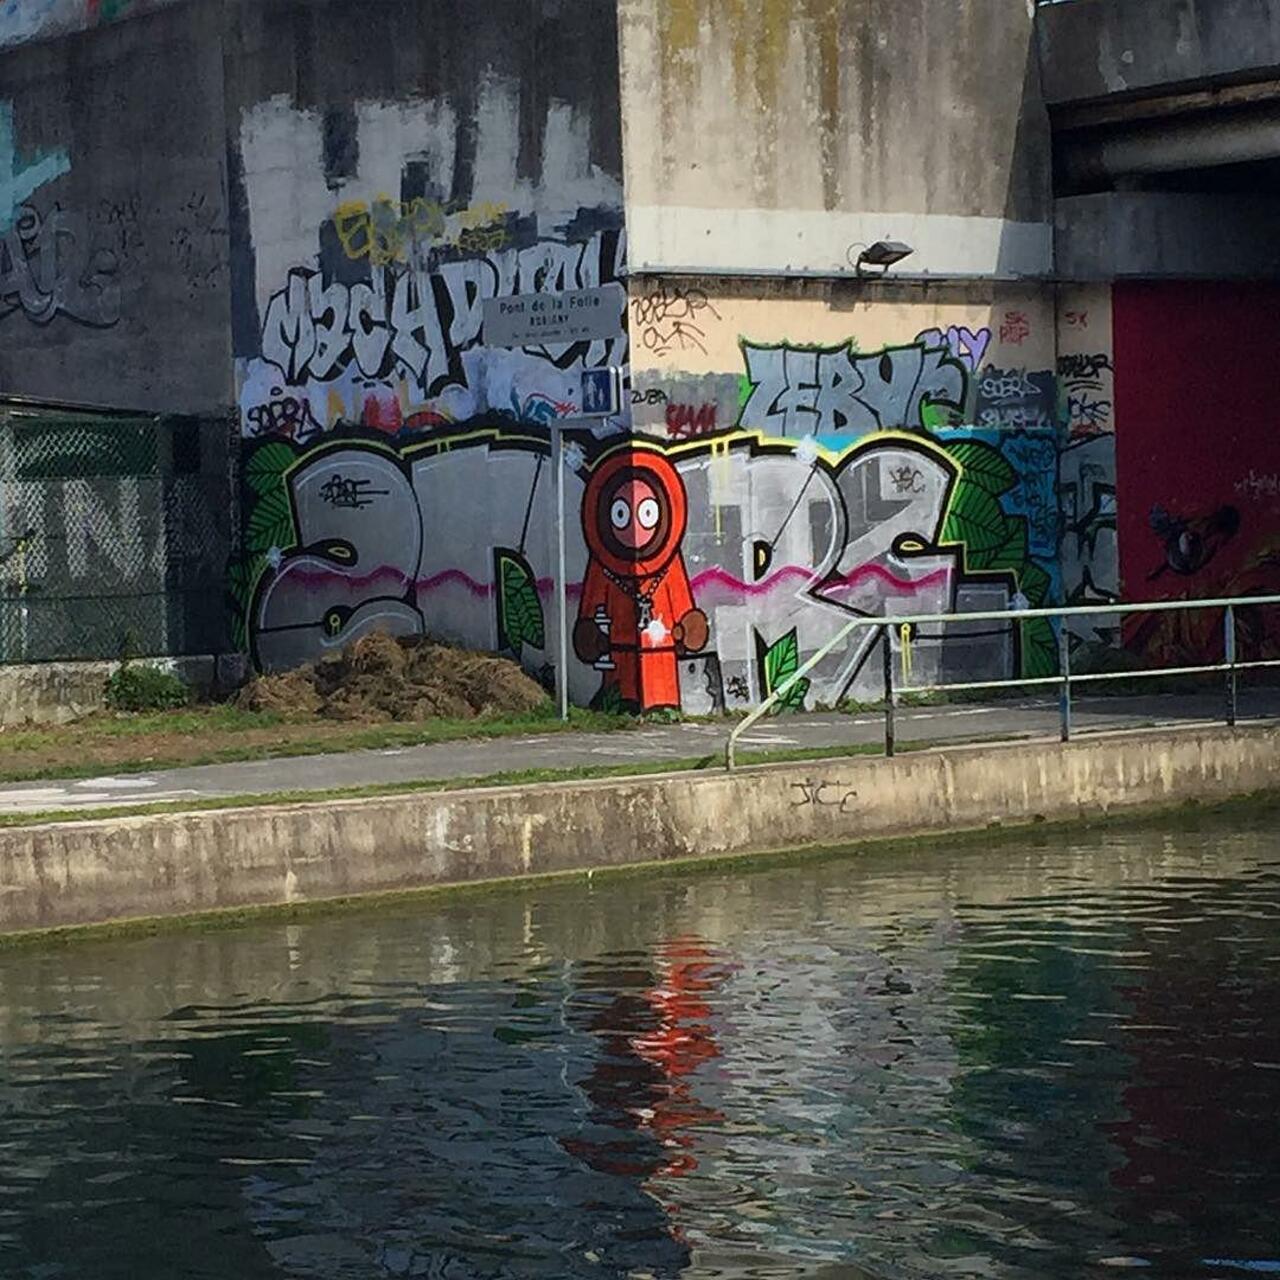 #Paris #graffiti photo by @ijustdontknow http://ift.tt/1ObQc0W #StreetArt http://t.co/HcahWWx416